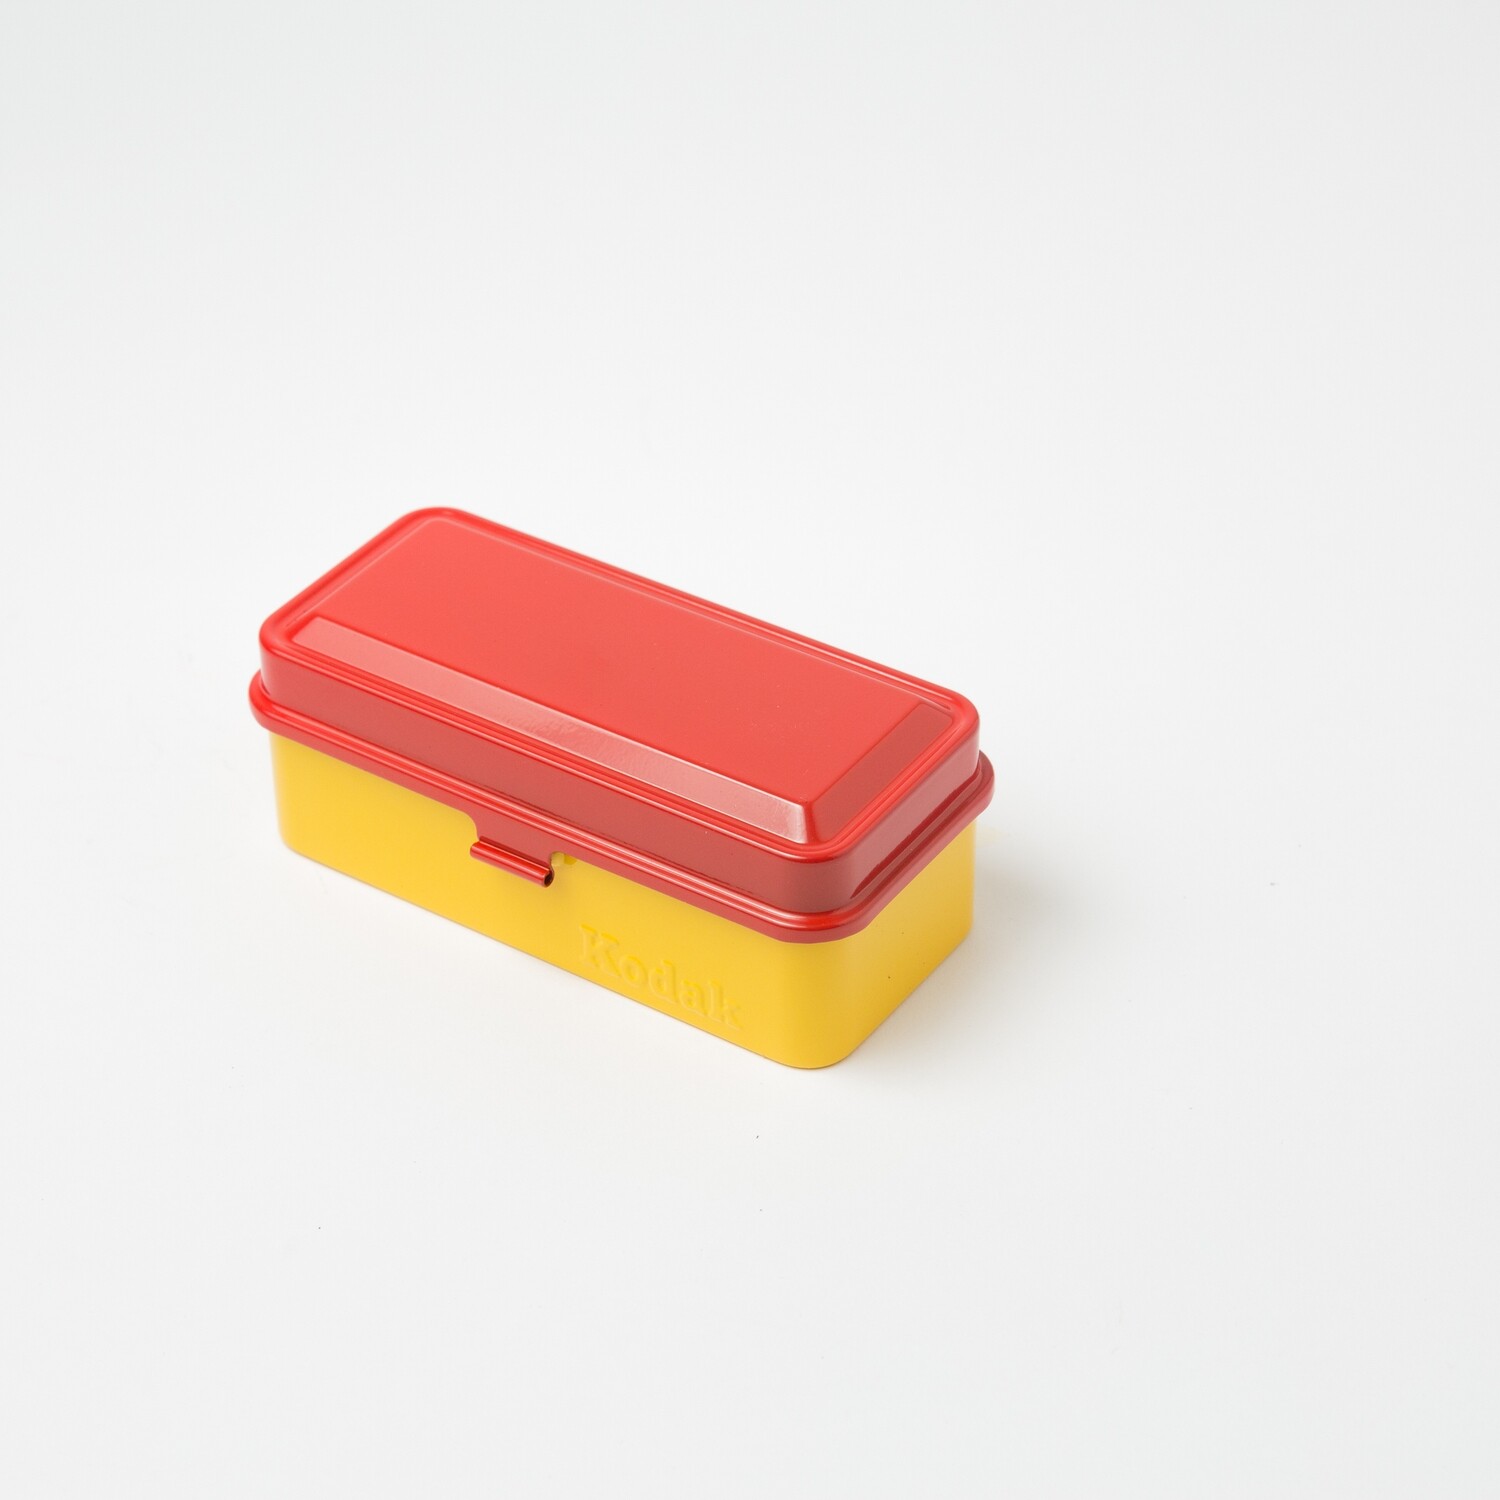 Kodak Steel 120/135mm Film Case [Red Lid/Yellow Body]